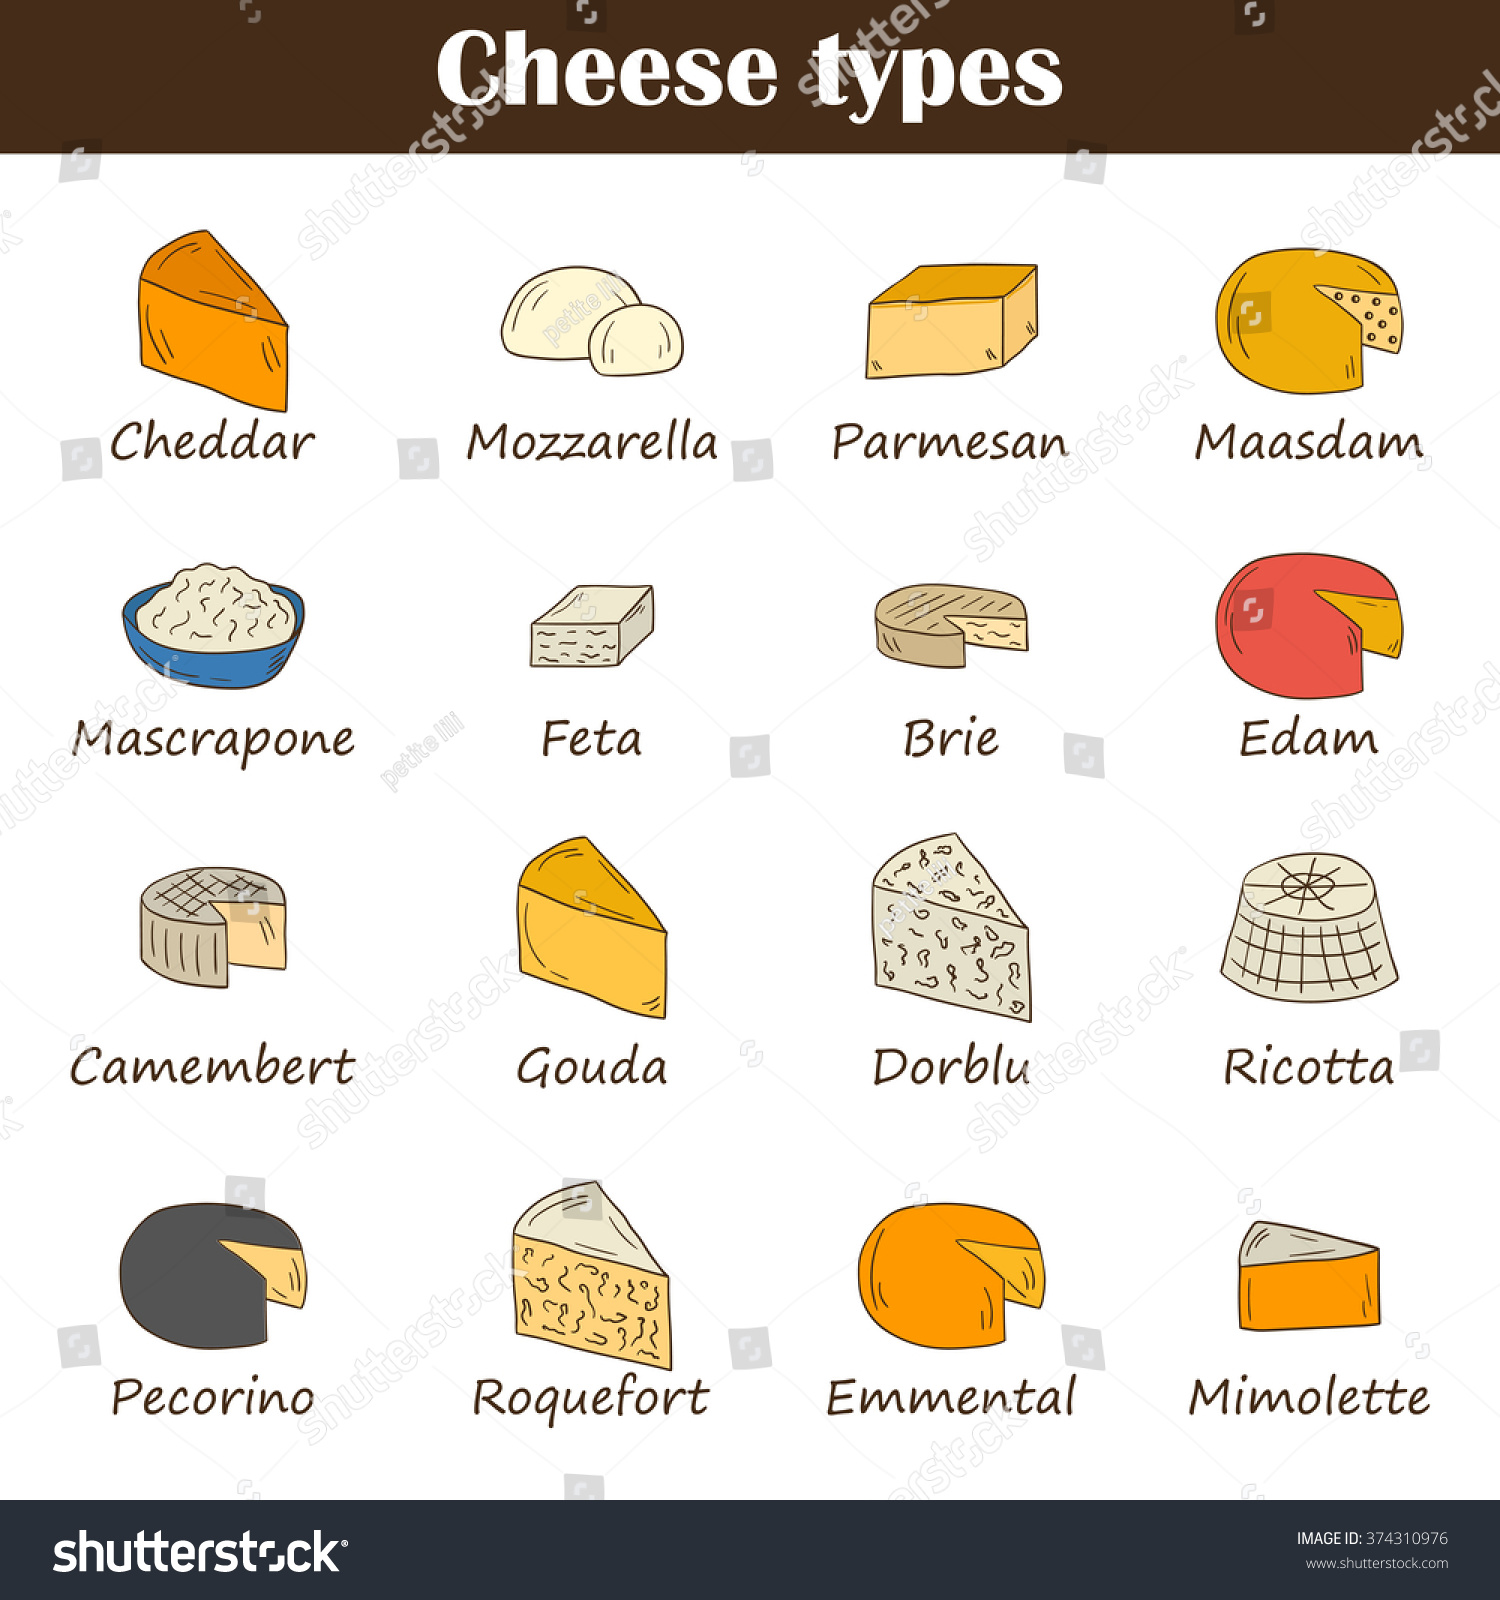 Hand Drawn Cheese Types: стоковые изображения в HD и миллионы других стоков...